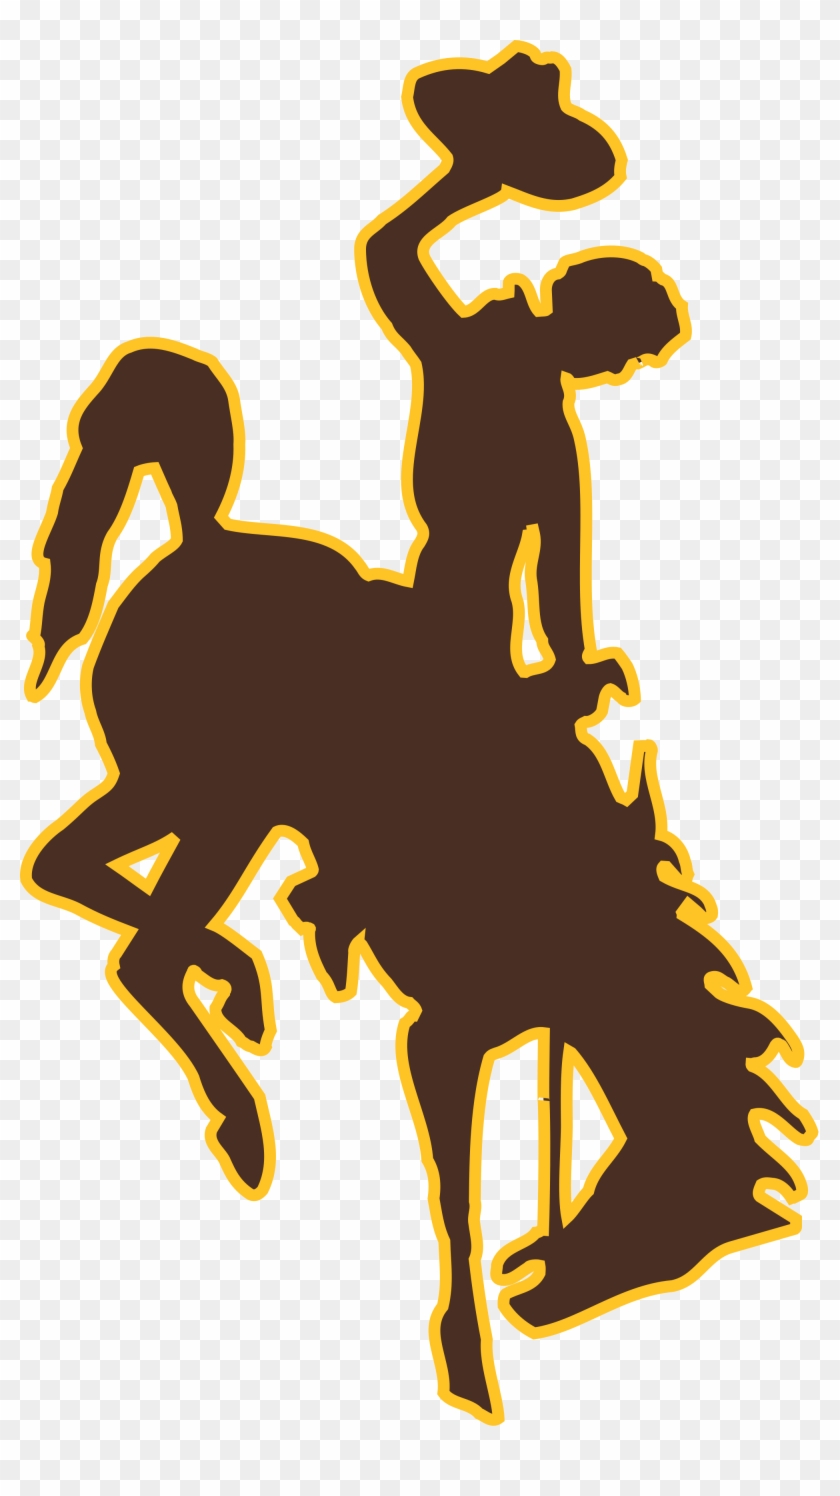 Open - University Of Wyoming Mascot #363962